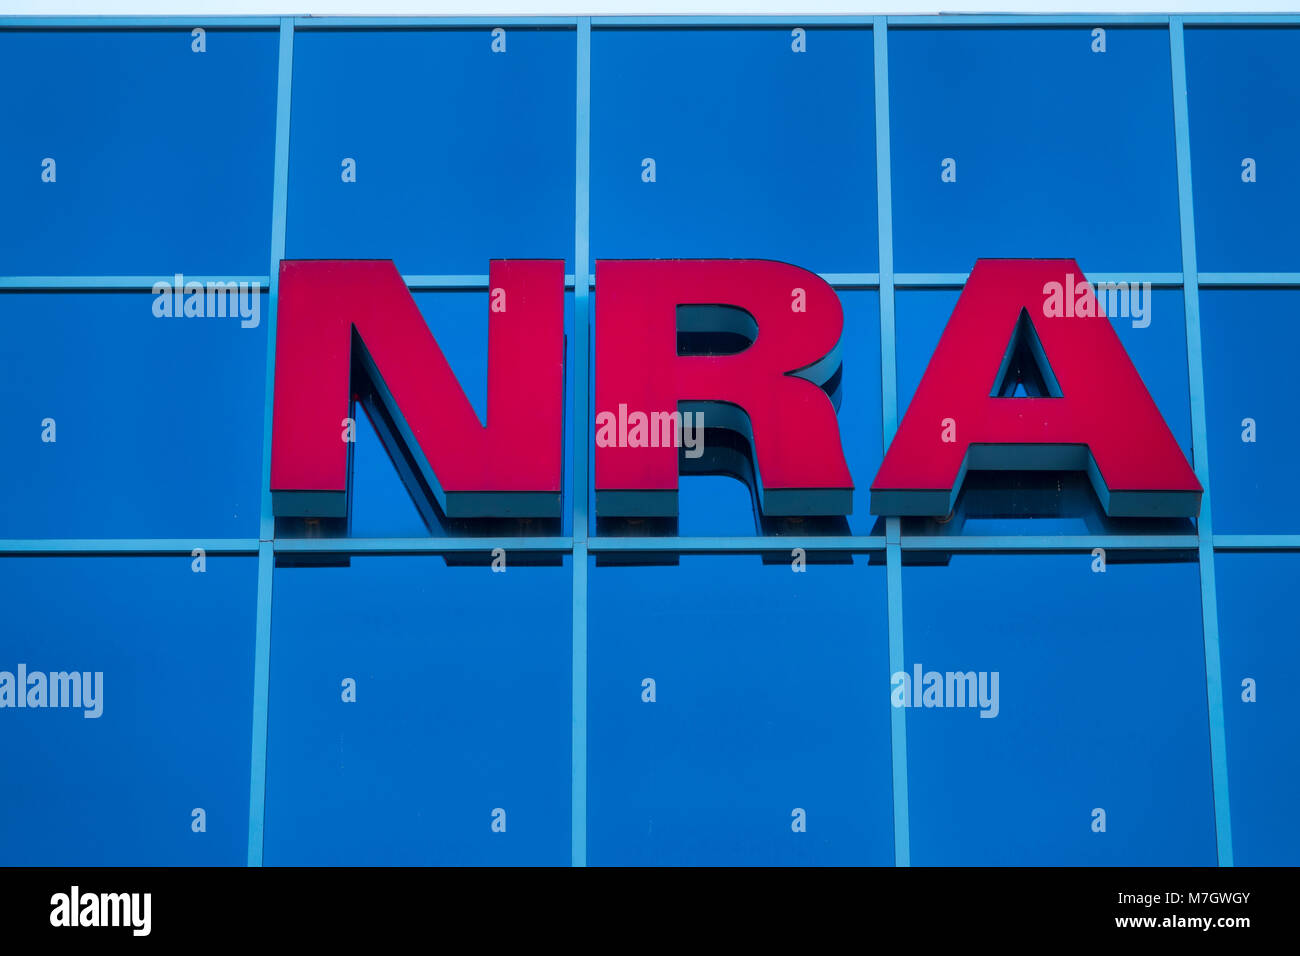 La sede de la Asociación Nacional del Rifle NRA en Fairfax, Virginia va gun derechos grupo de cabildeo en EE.UU. Foto de stock